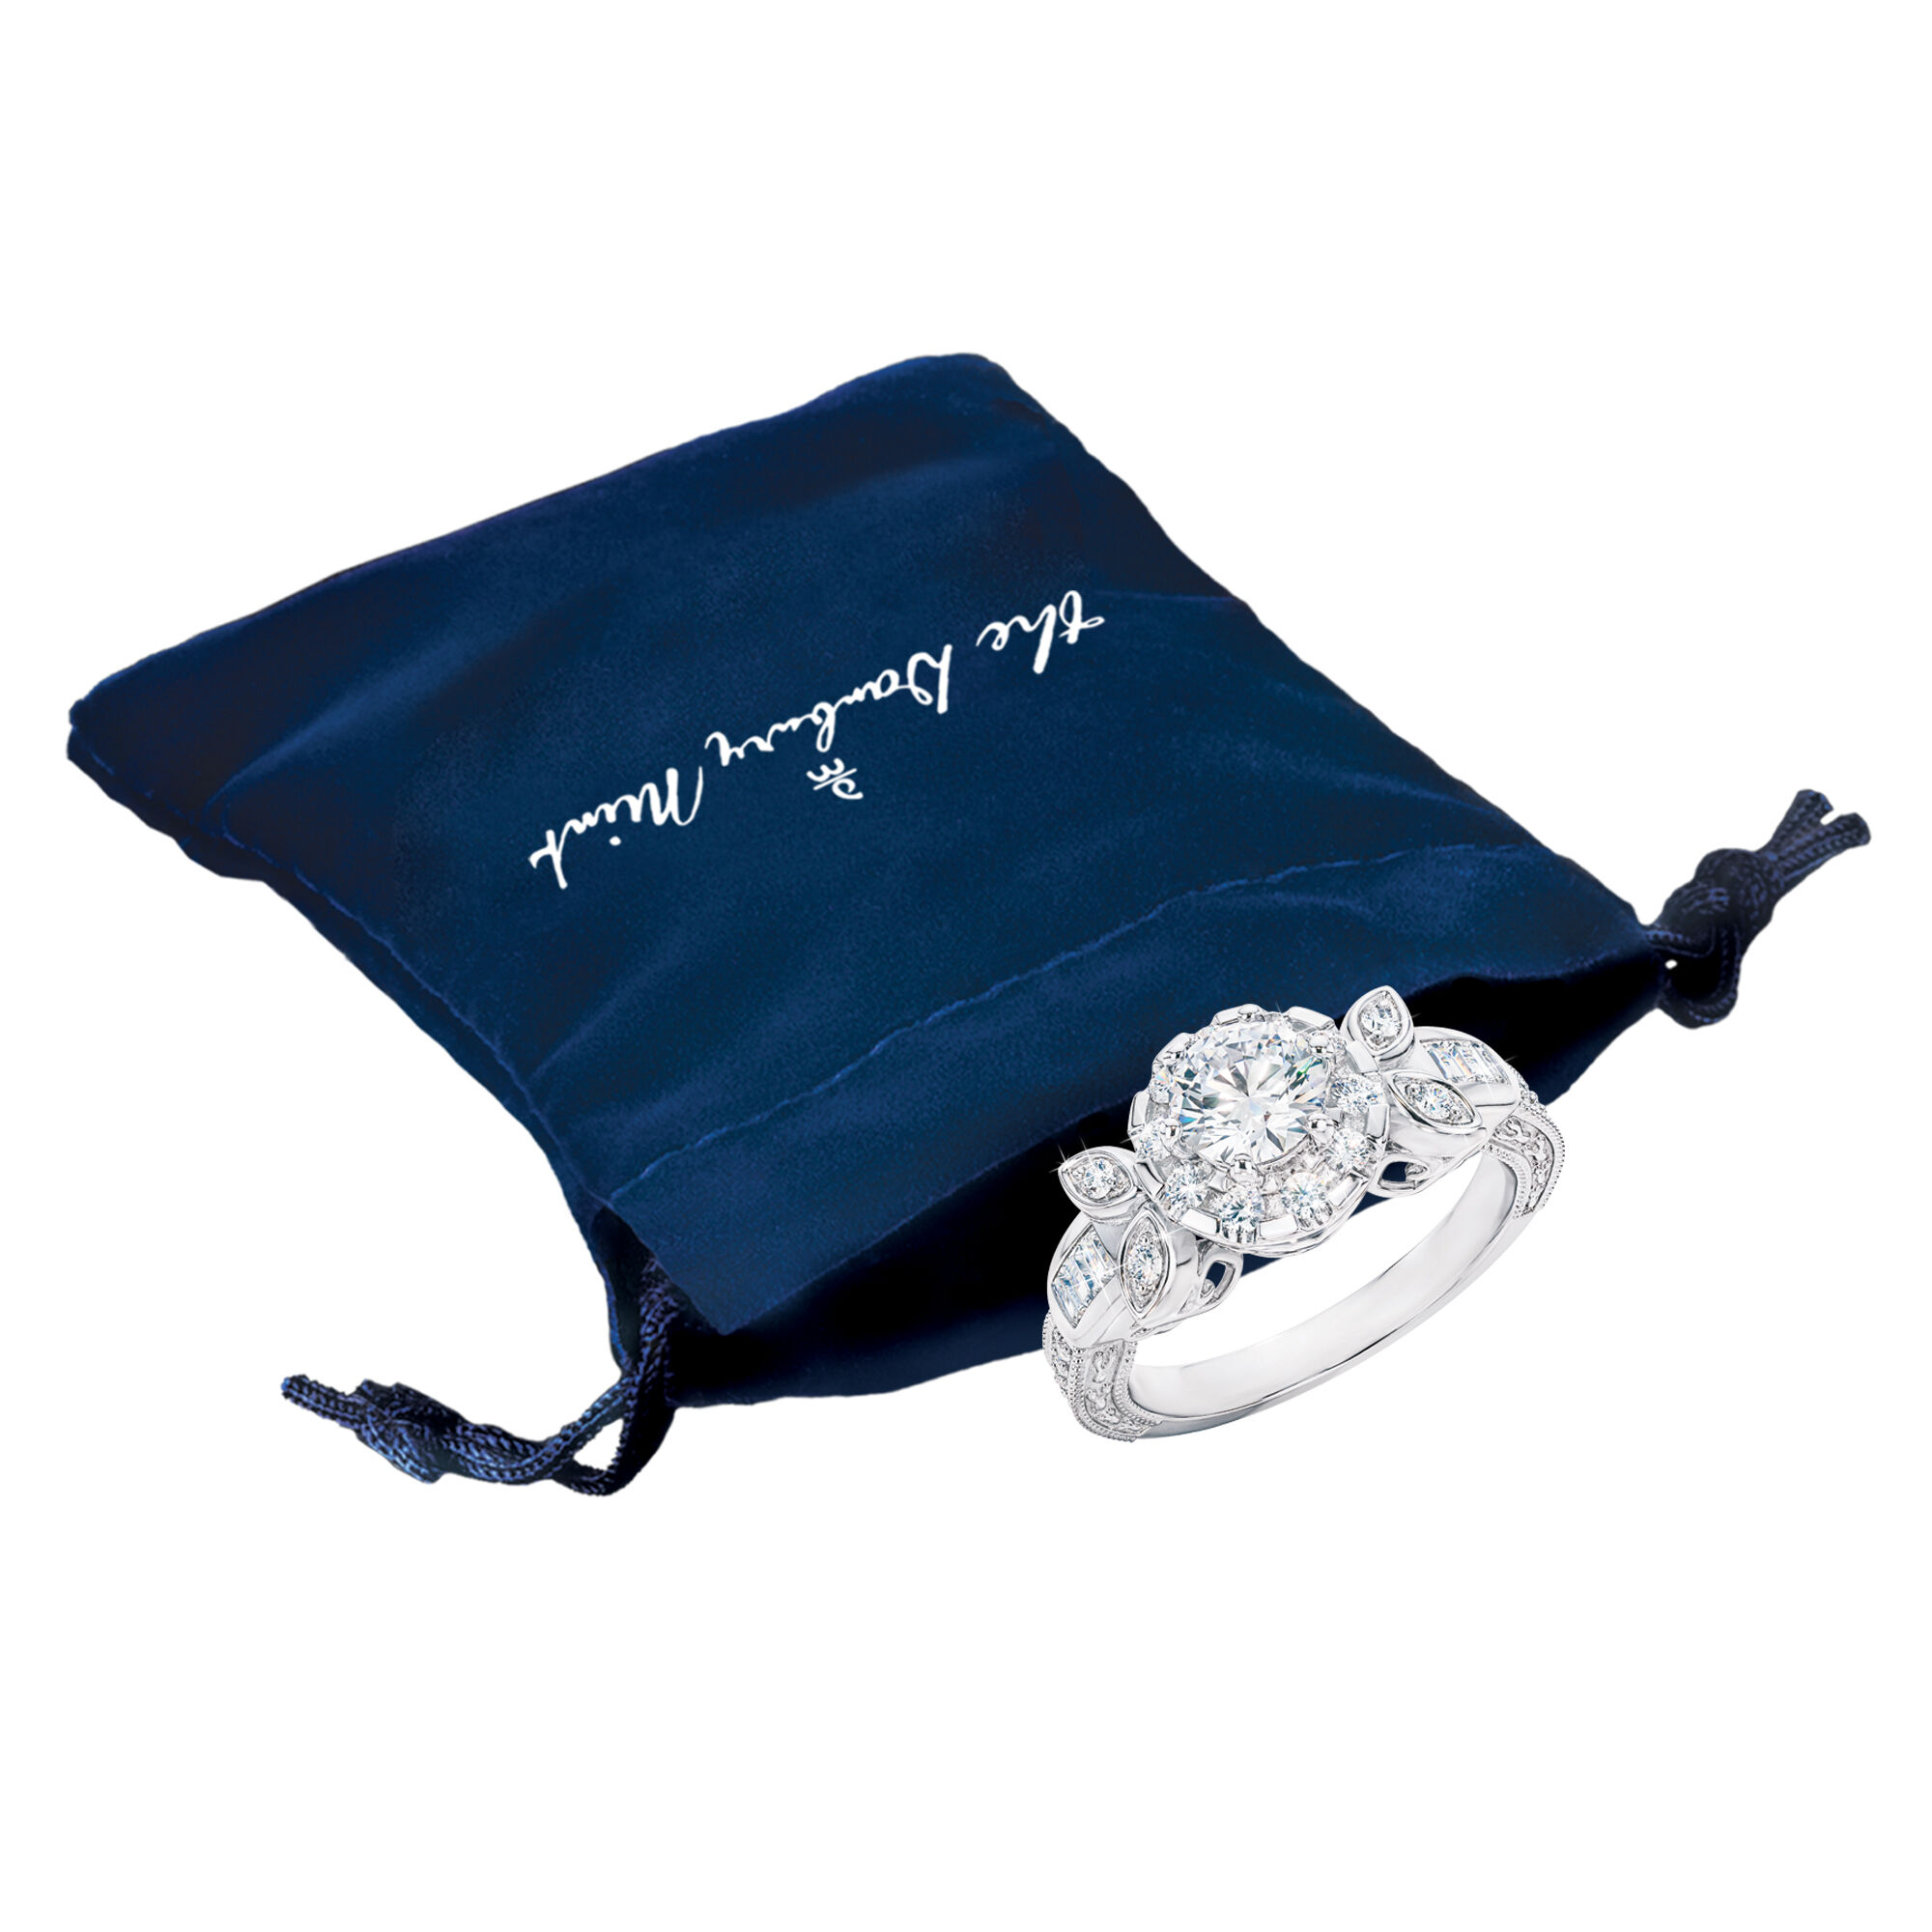 Infinite Splendor Sterling Silver Ring 10760 0017 g gift pouch